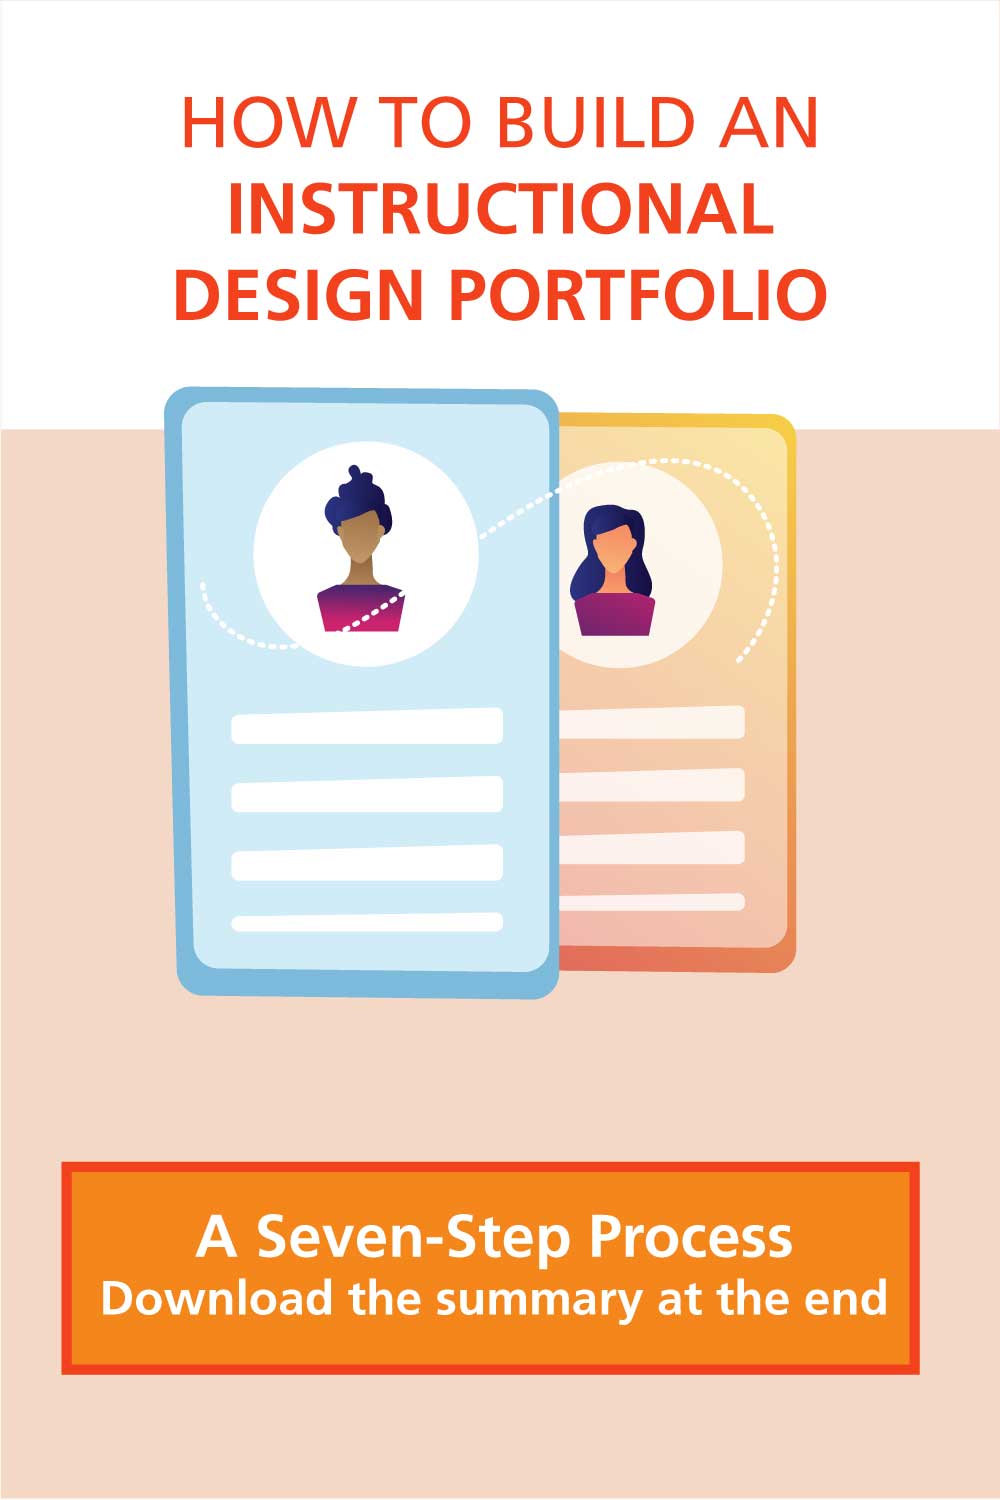 How to Build an Instructional Design Portfolio